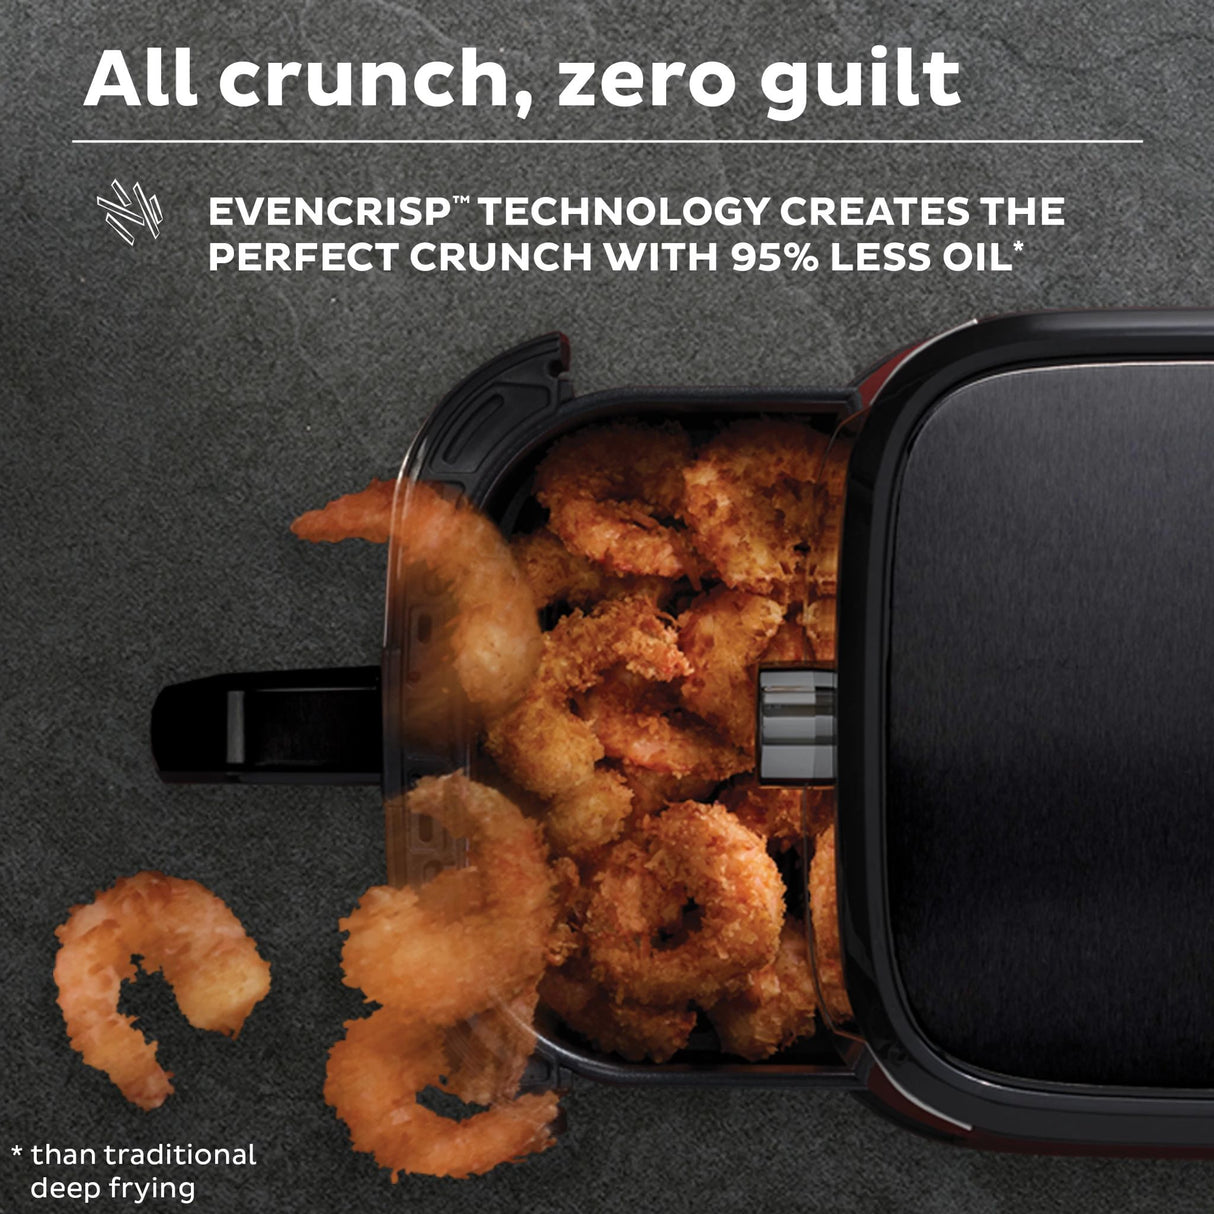  Instant™ Vortex™ 6-quart Air Fryer with text All crunch, zero guilt